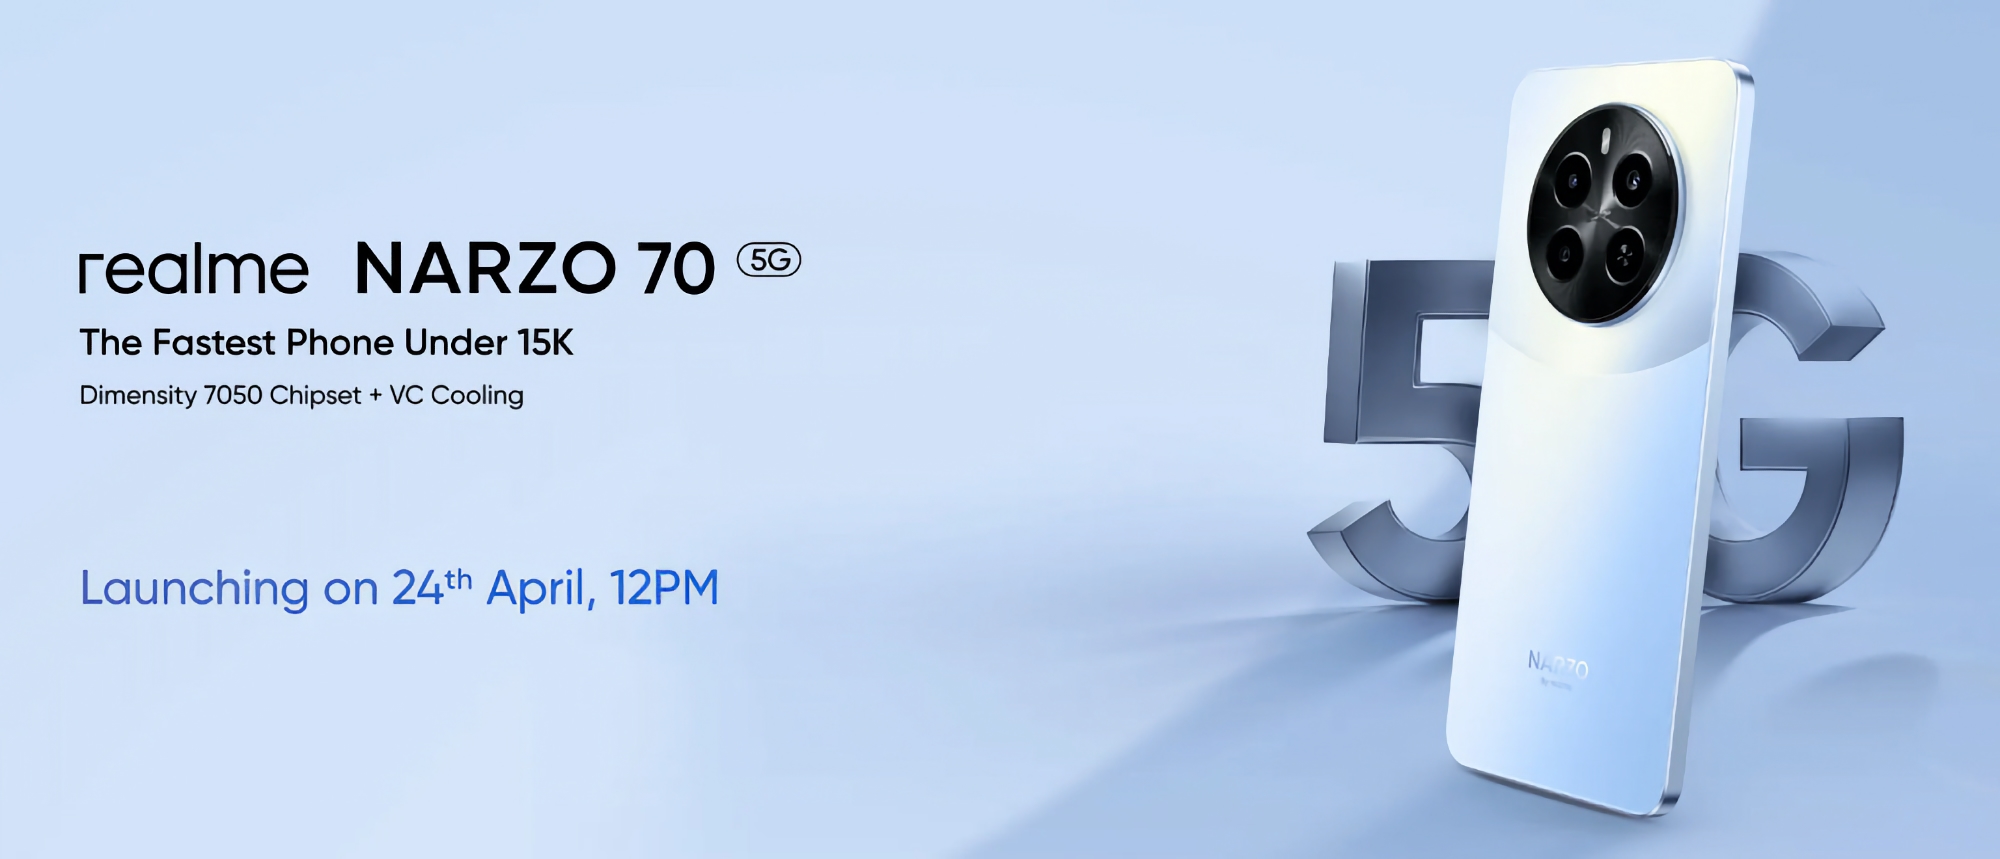 Het is officieel: realme Narzo 70 5G met MediaTek Dimensity 7050-chip debuteert op 24 april